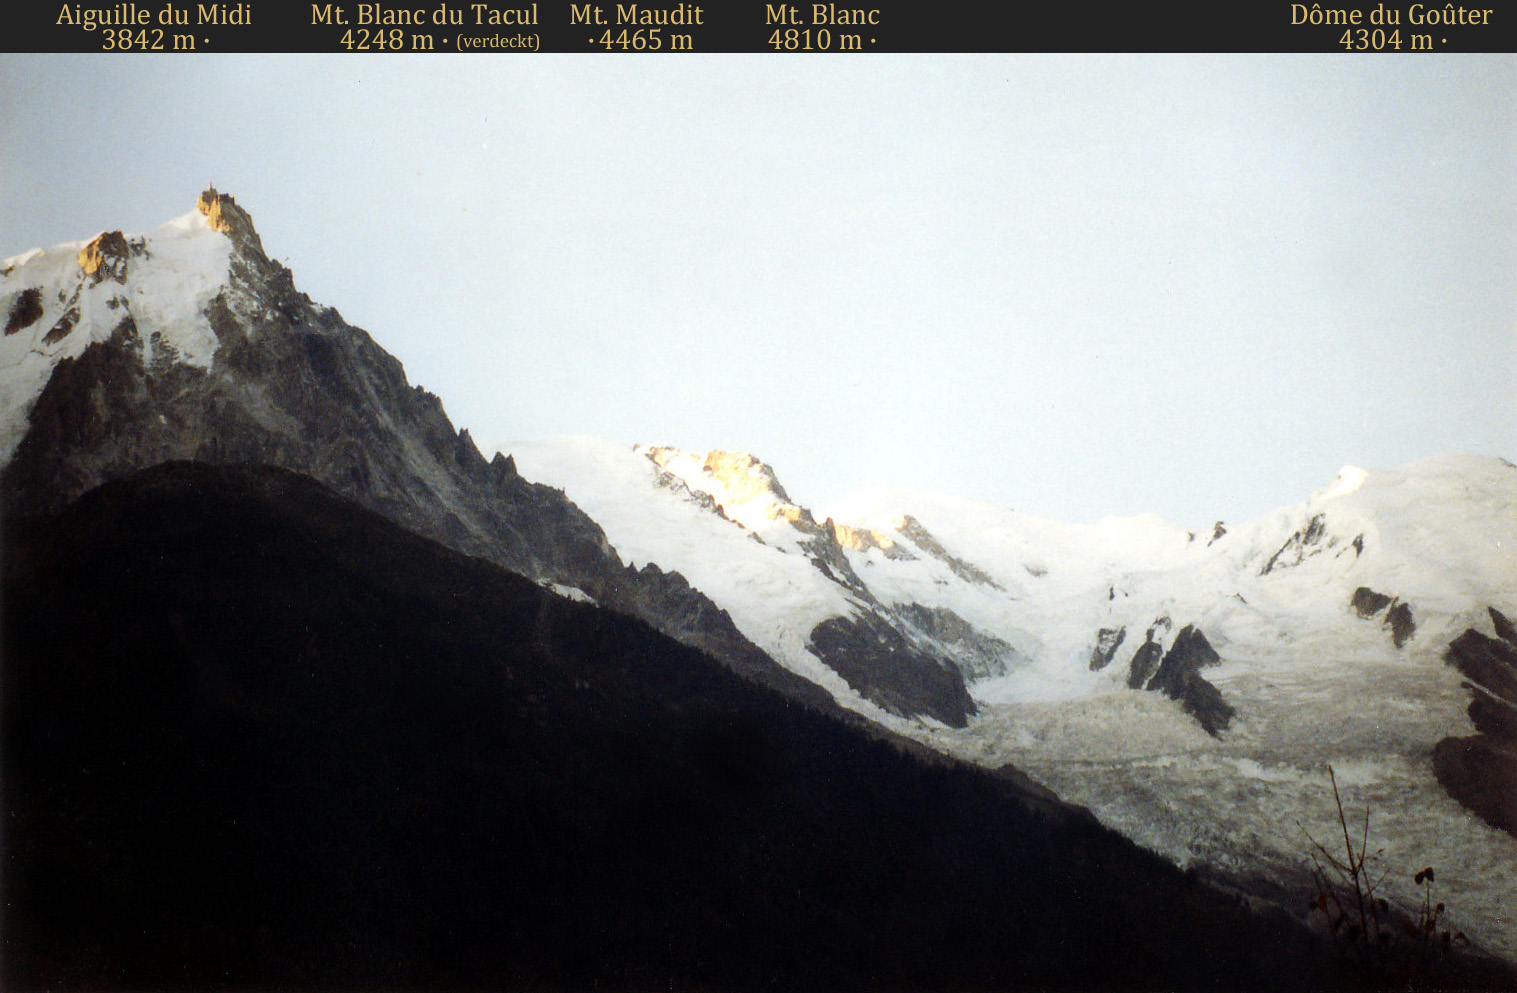 Haute-Savoie: Aiguille du Midi und Mont Blanc im Morgenlicht